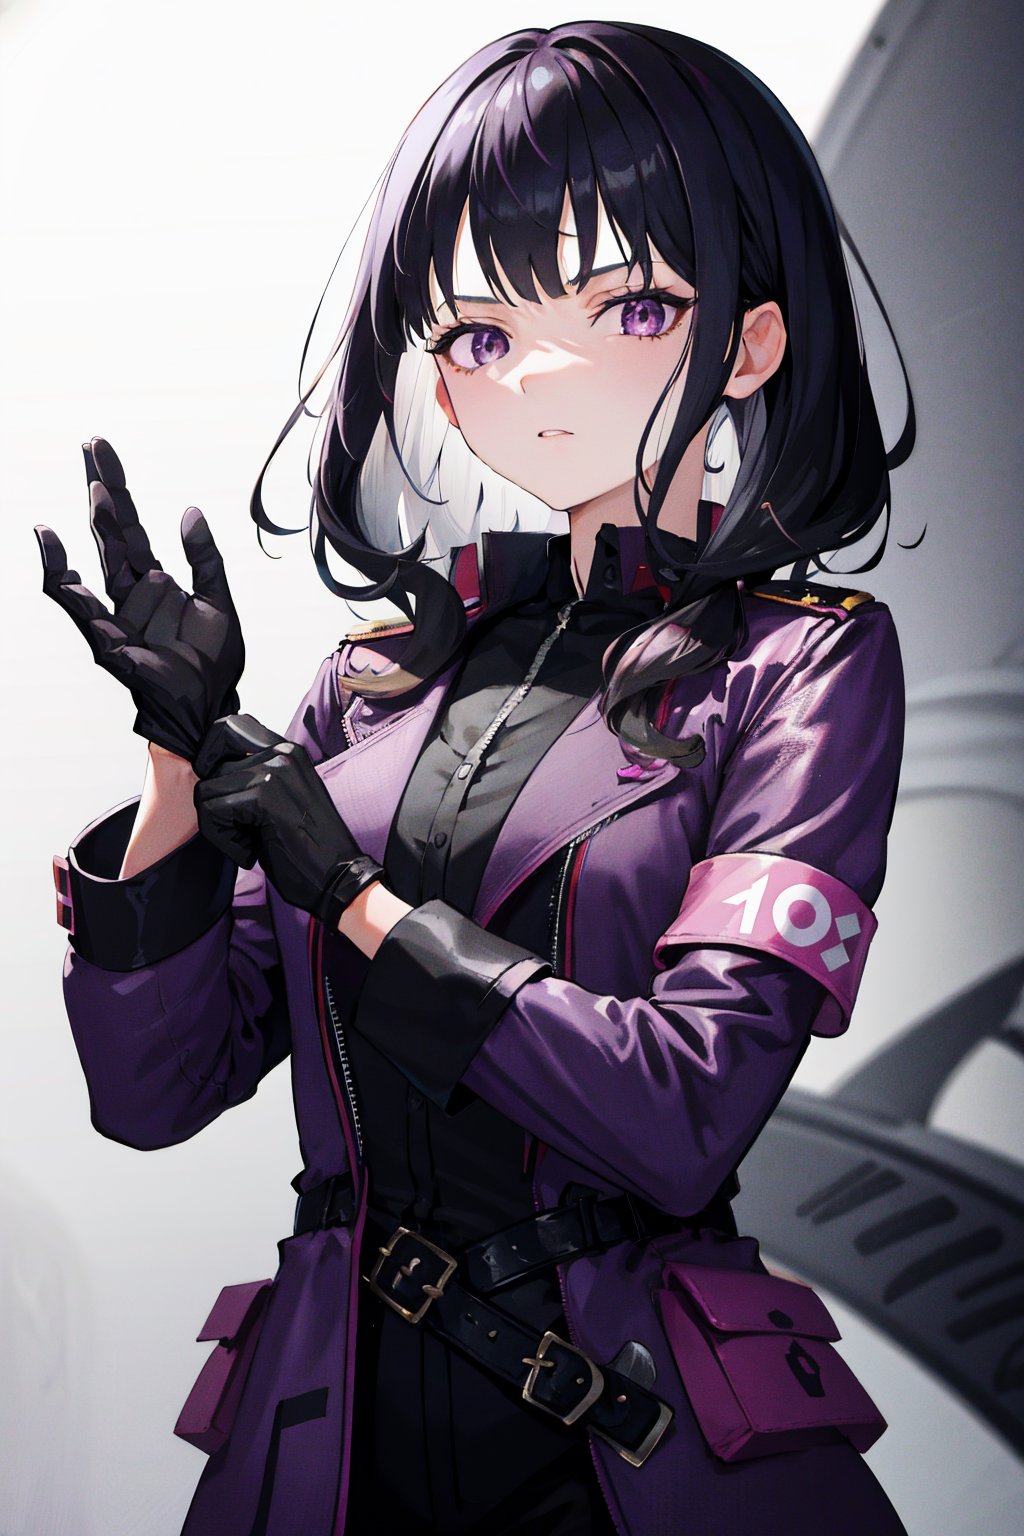 1girl, medium black hair, wave hair, bangs, purple eyes, detective outfit, gloves, adjusting gloves